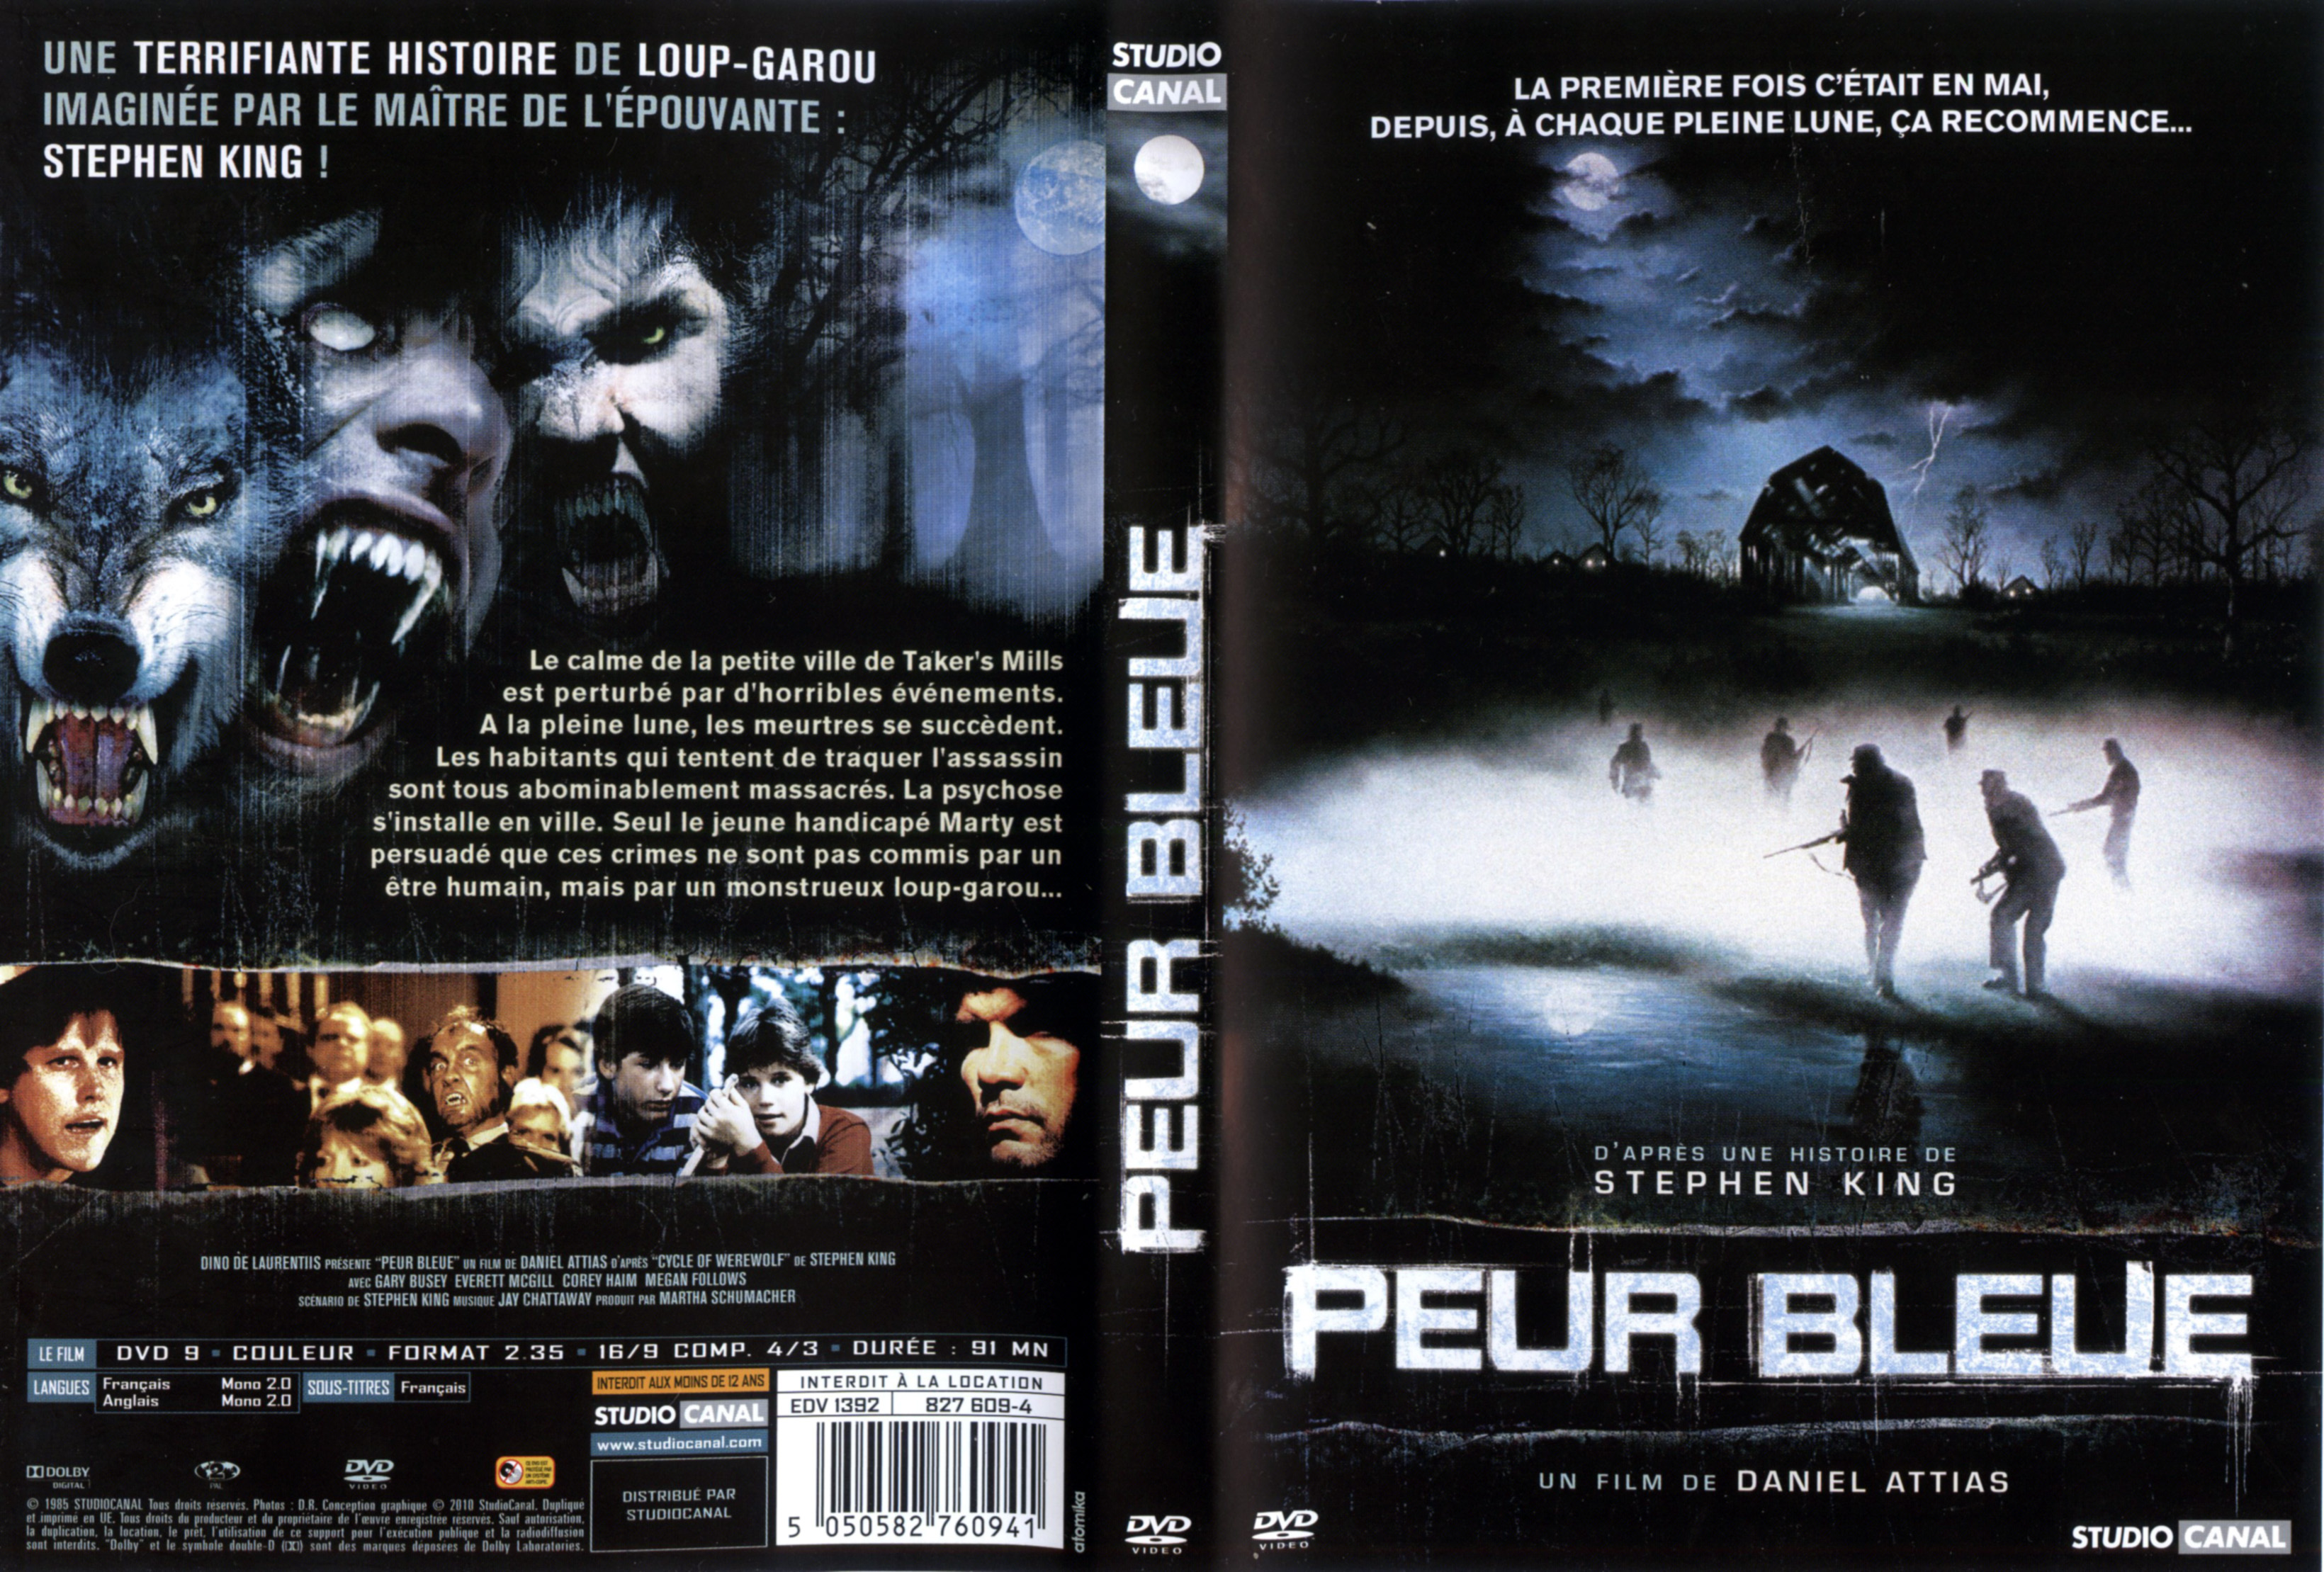 Jaquette DVD Peur bleue (stephen king) v3